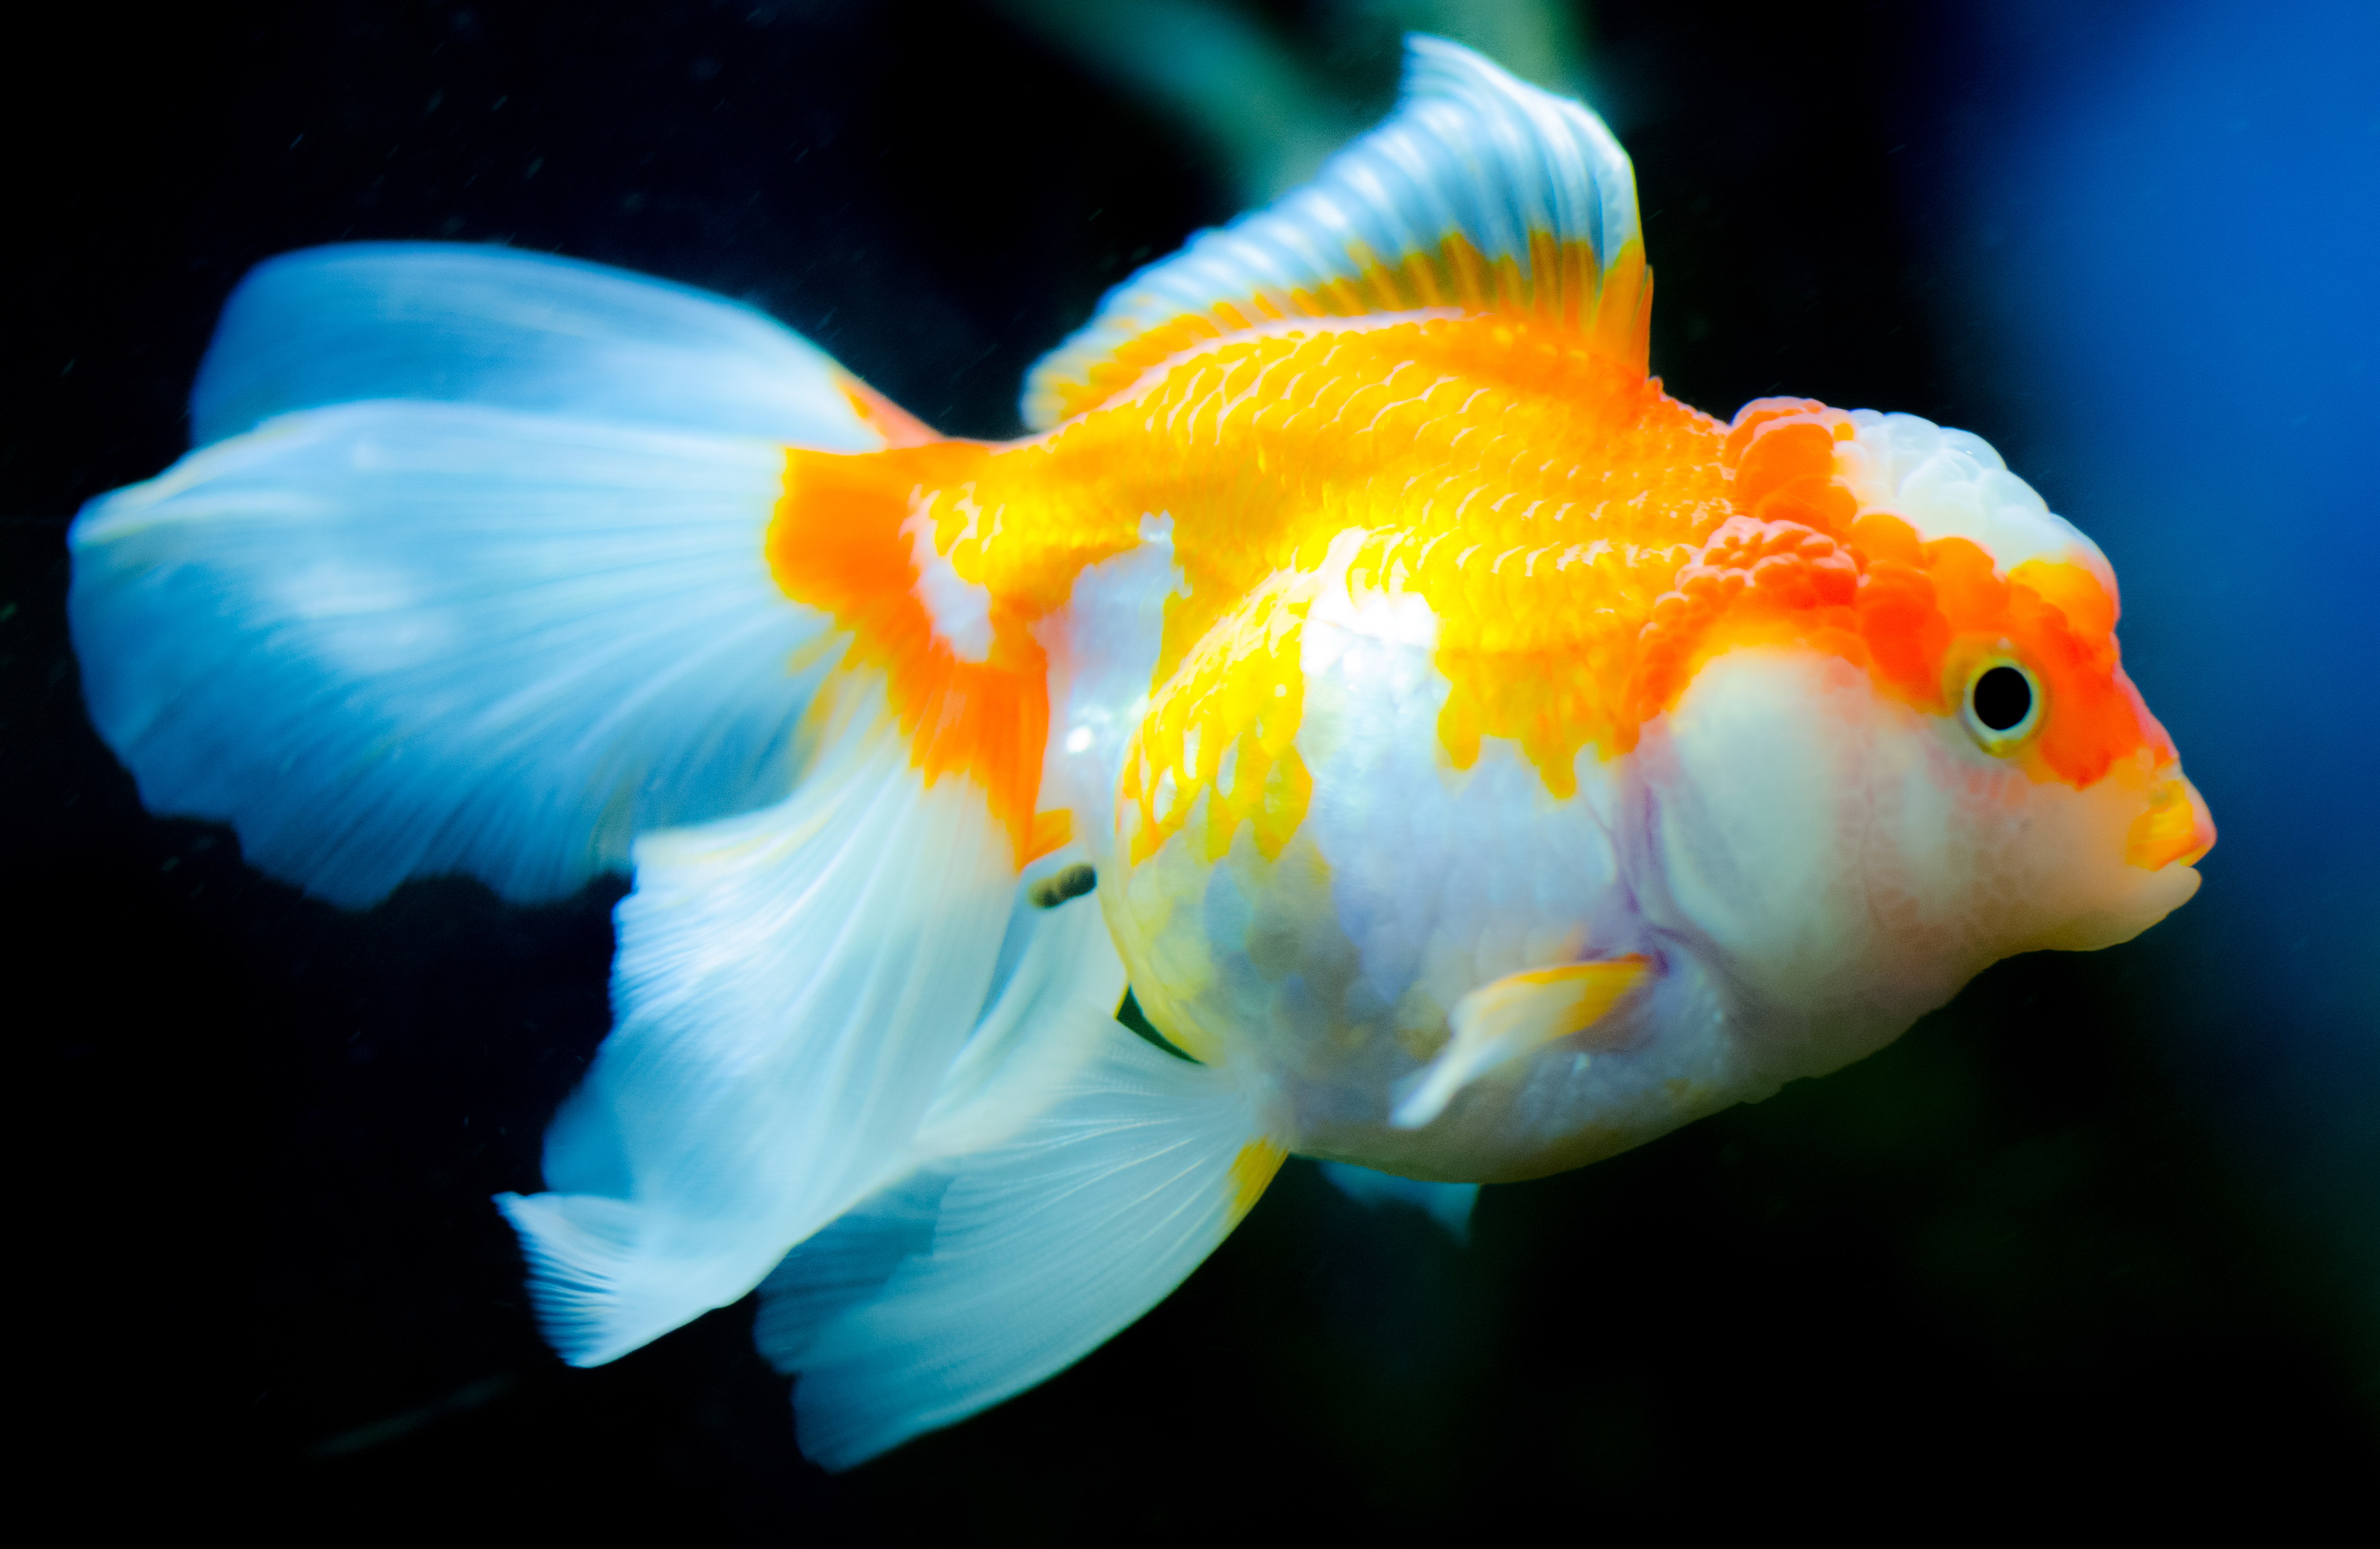 美丽的金鱼图片4096x2304分辨率下载,美丽的金鱼图片,图片,壁纸,动物